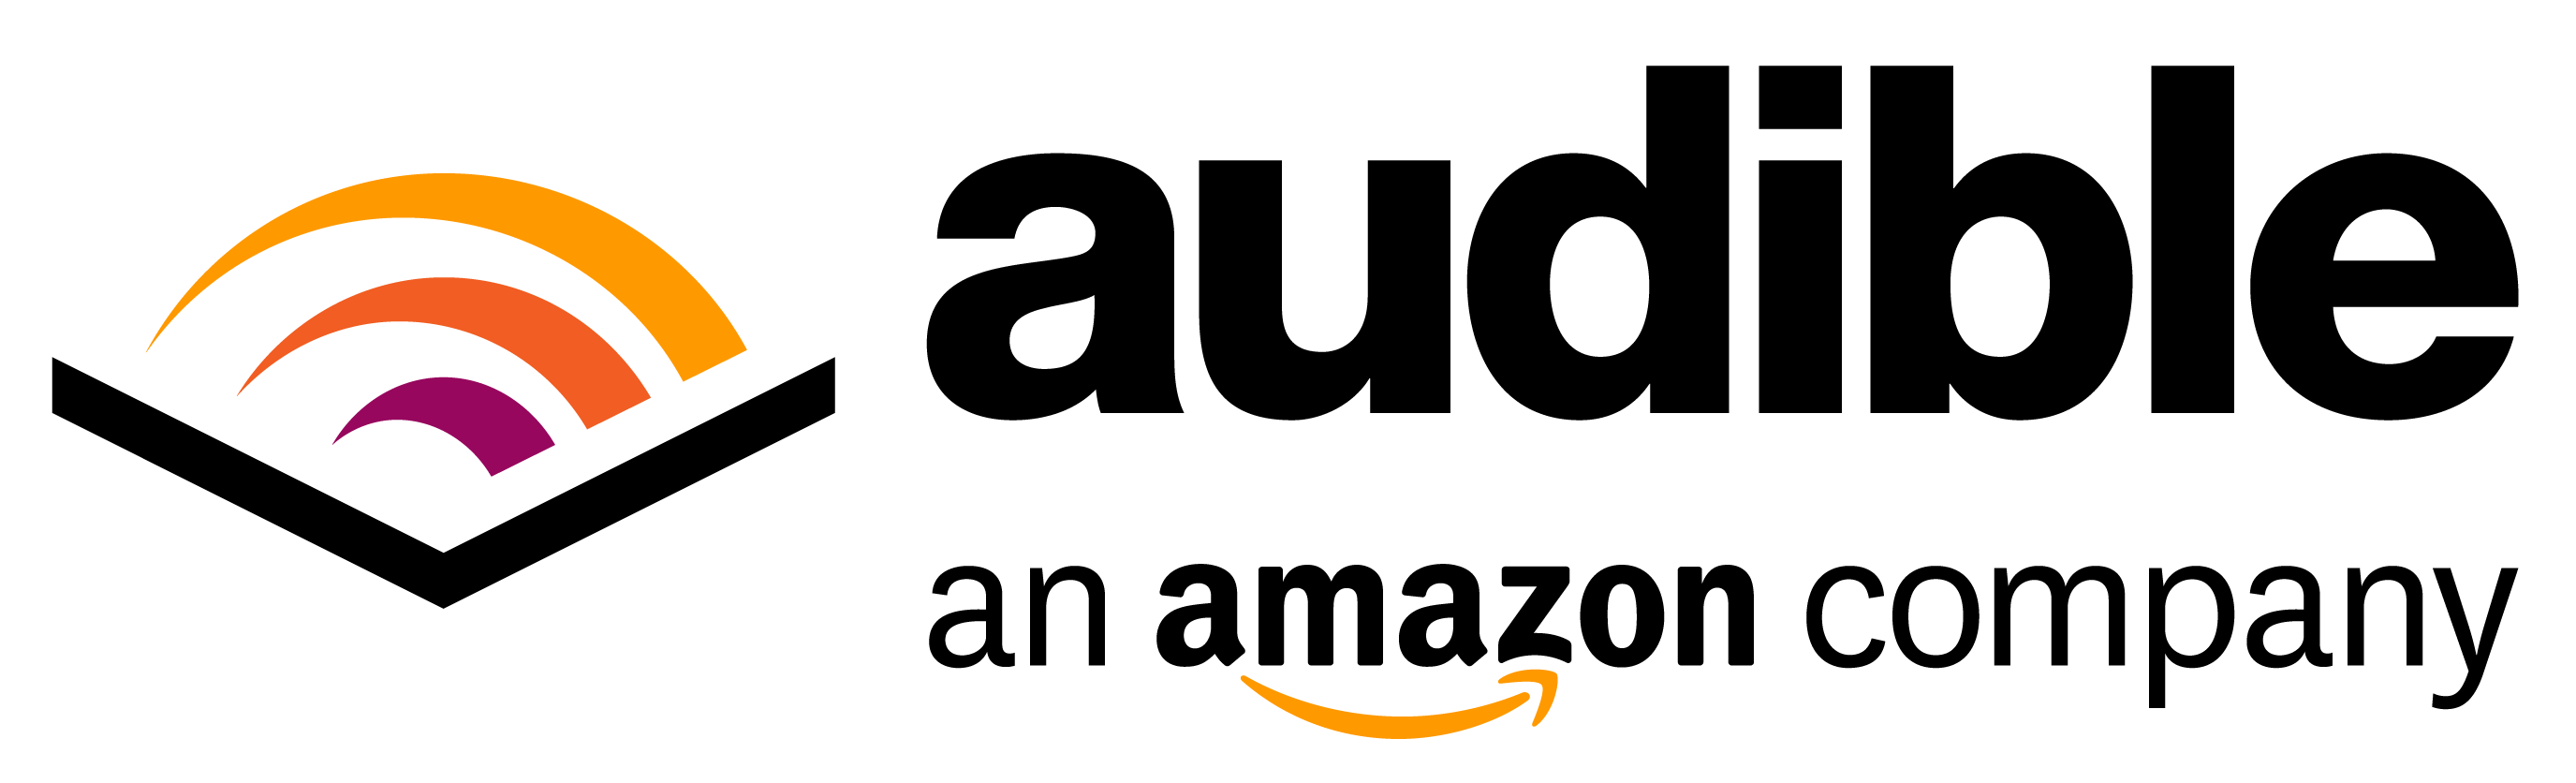 Amazon Books Logo - Expert Amazon AudioBooks Review 2019